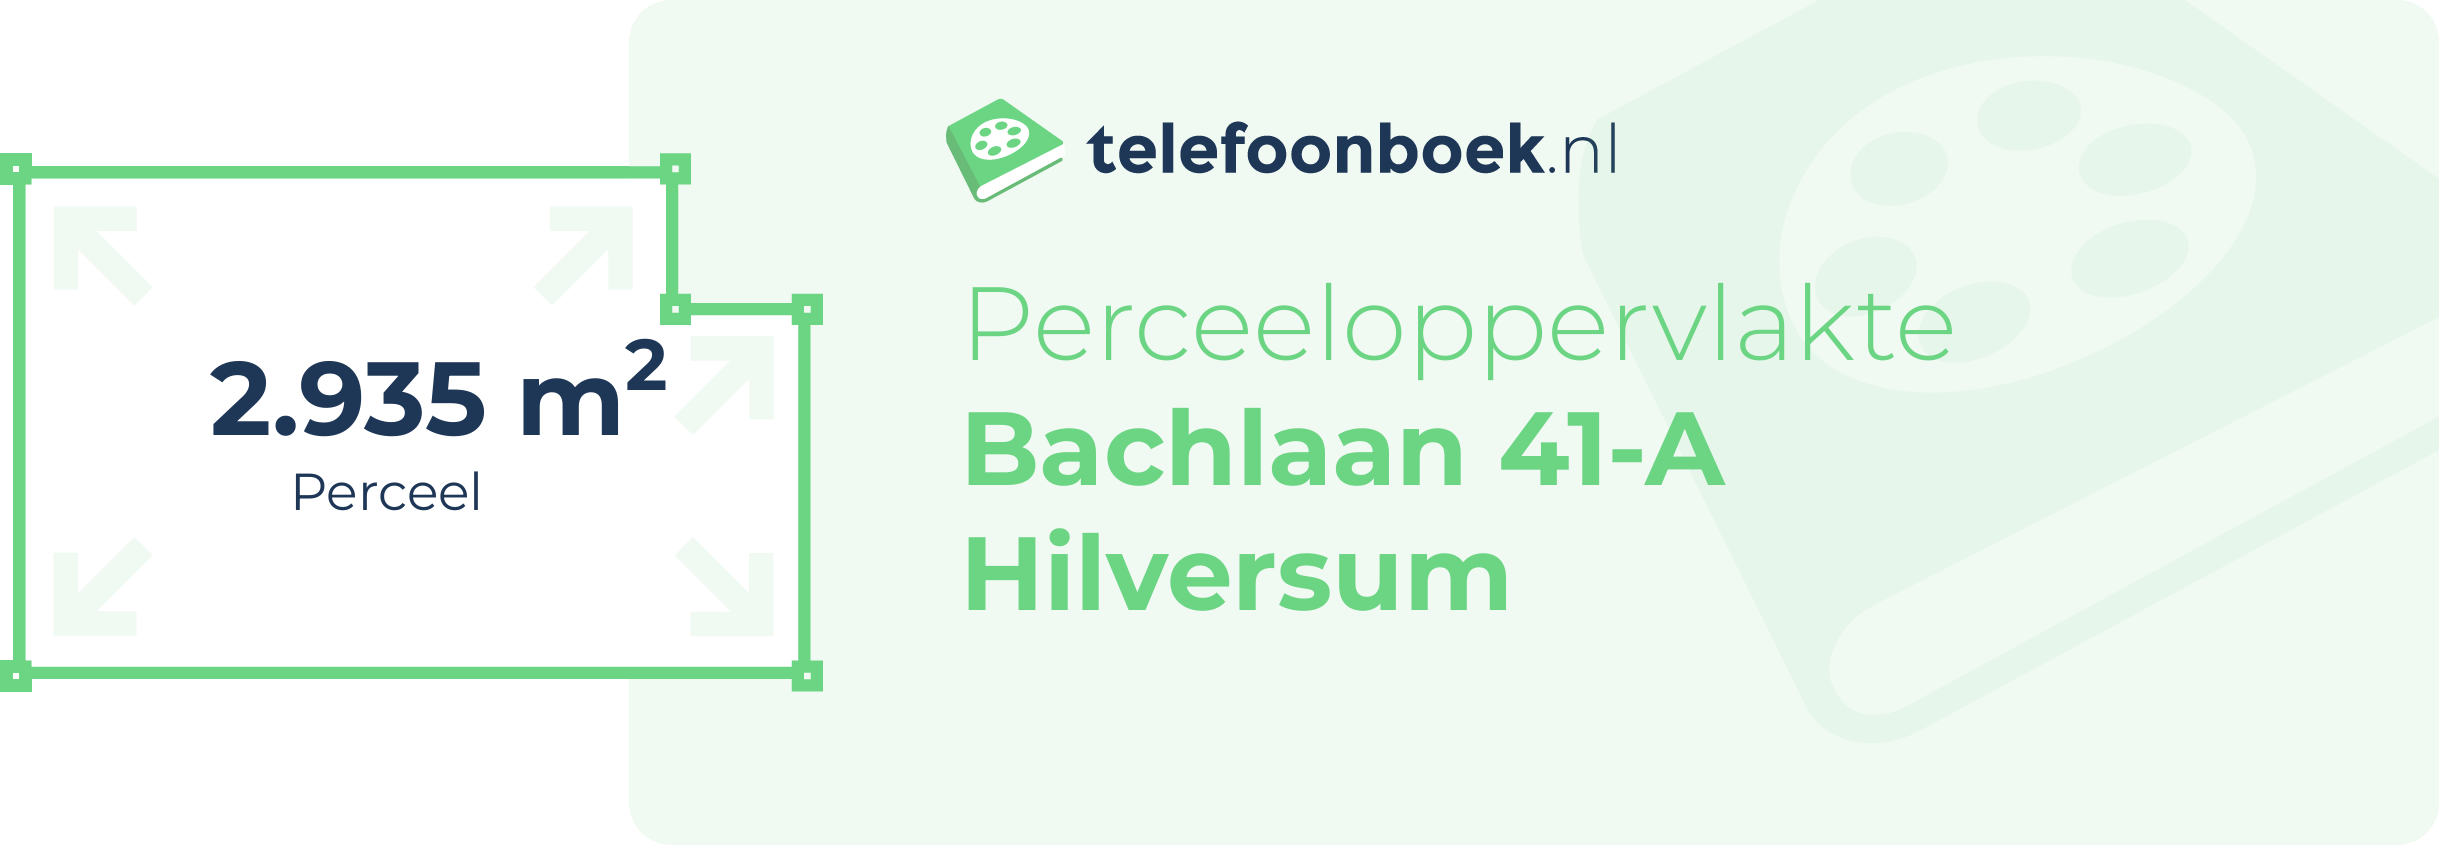 Perceeloppervlakte Bachlaan 41-A Hilversum